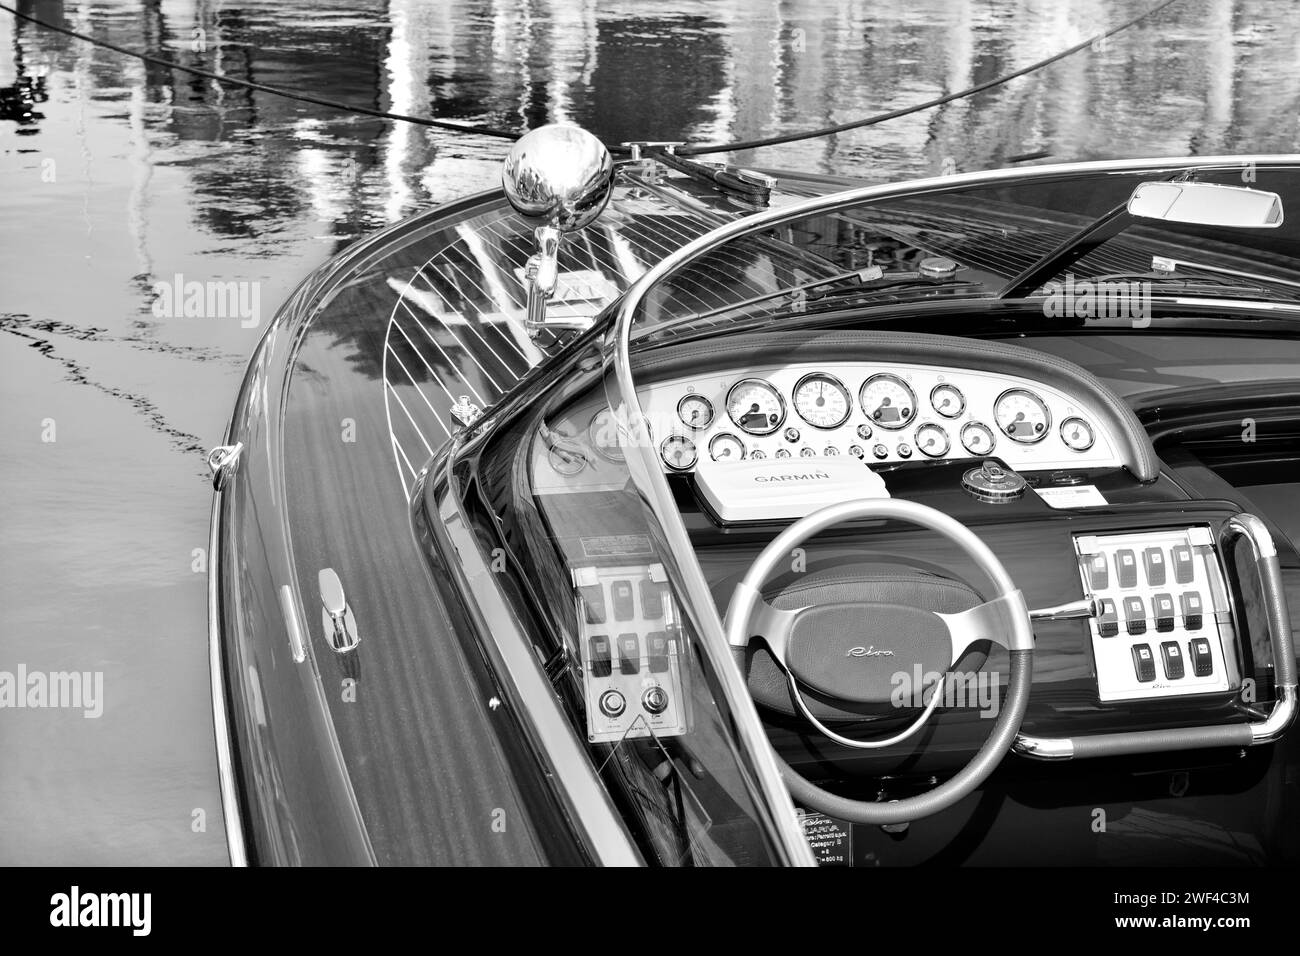 Aquariva motor board Riva - Ferretti Group Black and White Stock Photo